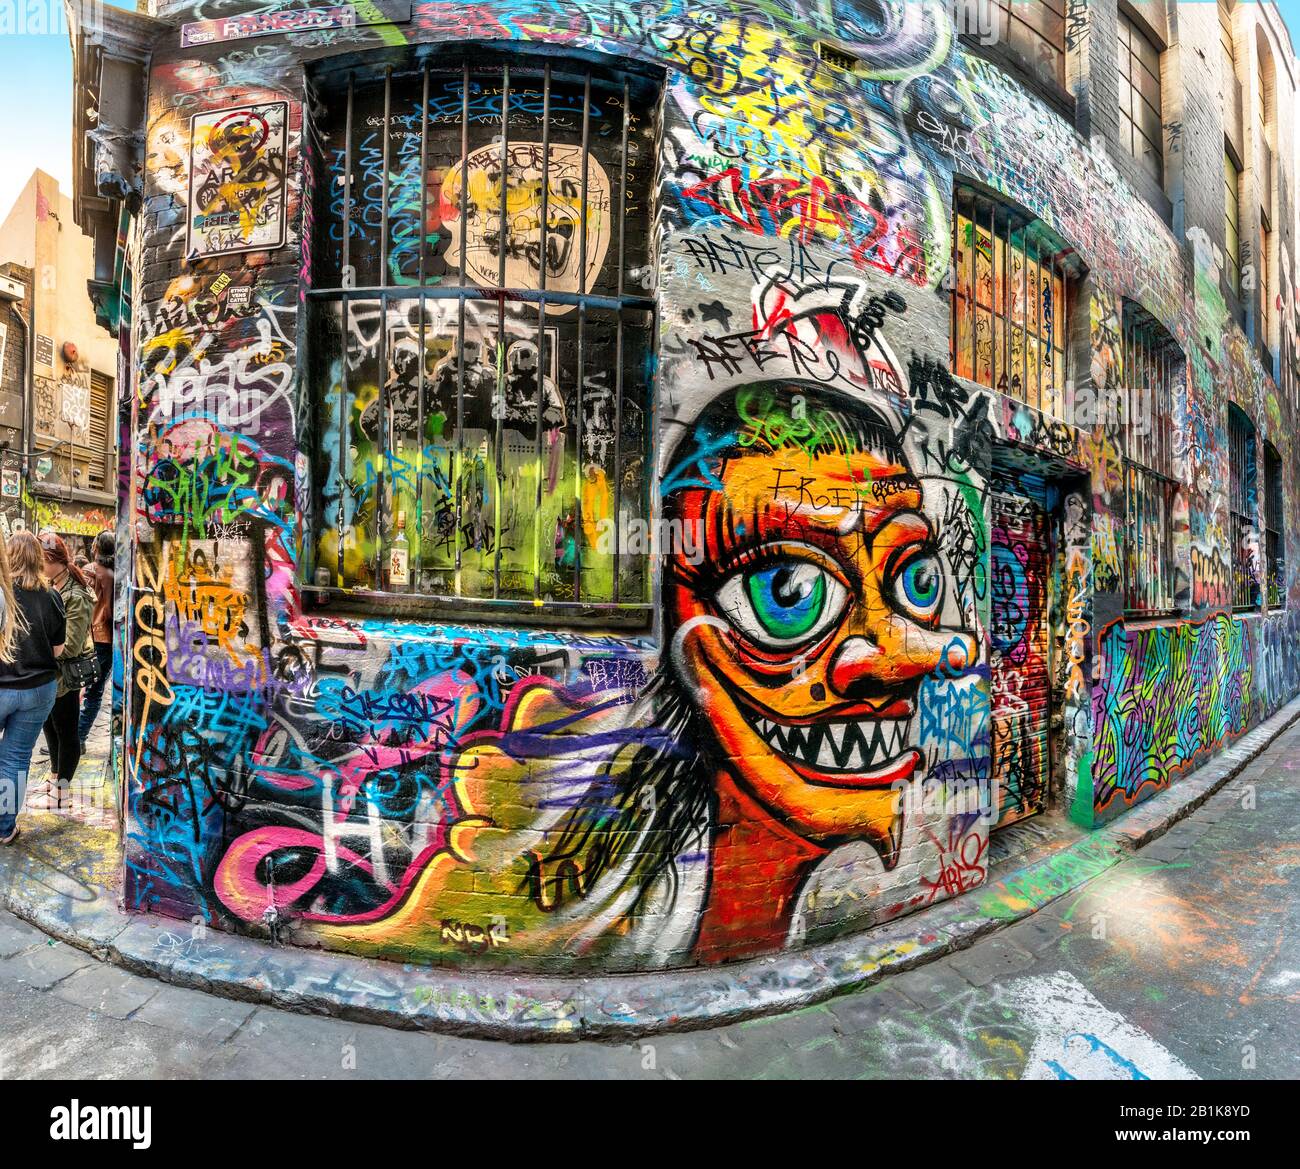 Des graffitis rigolo peints sur un mur de briques dans une ruelle pleine de graffitis colorés, Hosier Street, Melbourne Lanes, Melbourne, Victoria, Australie Banque D'Images